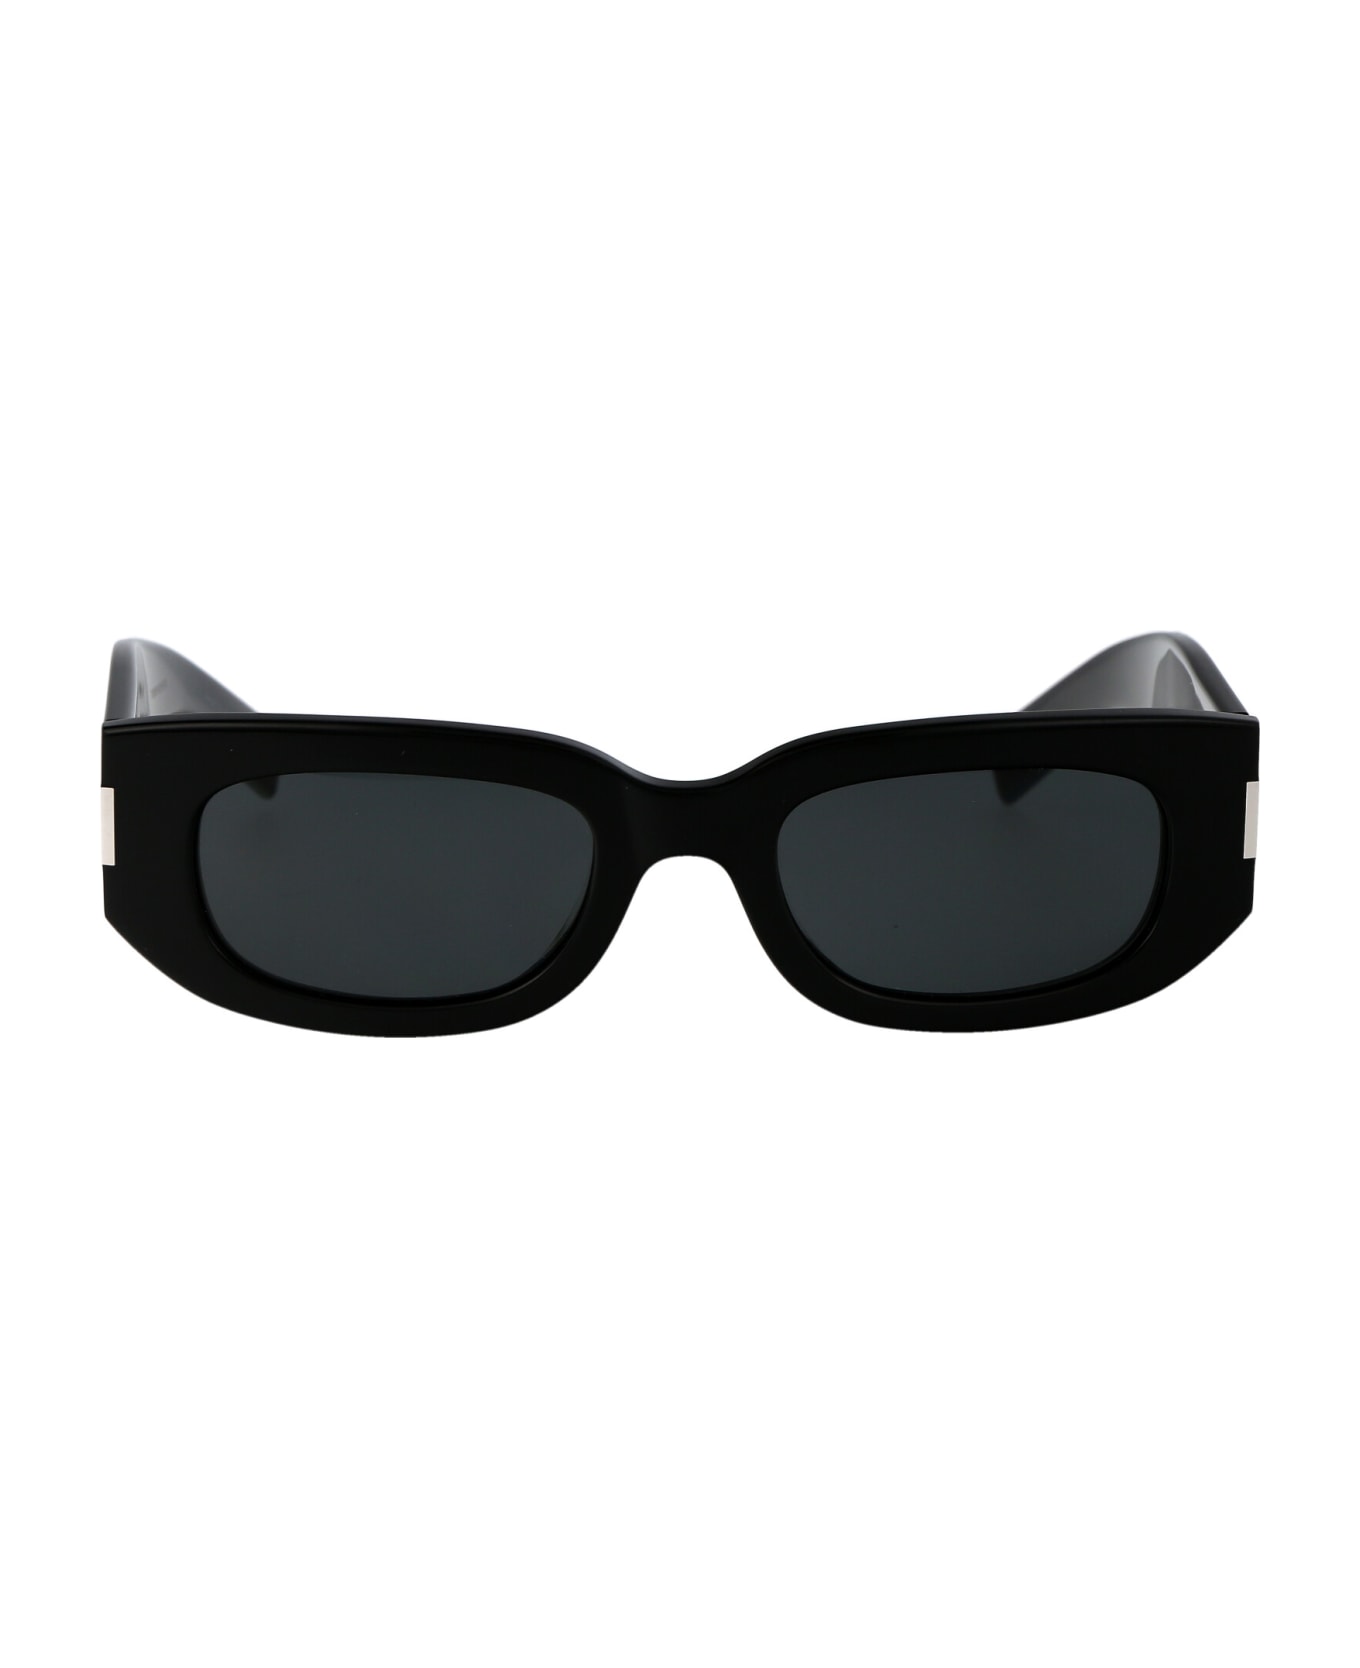 Saint Laurent Eyewear Sl 697 Sunglasses - 001 BLACK BLACK BLACK